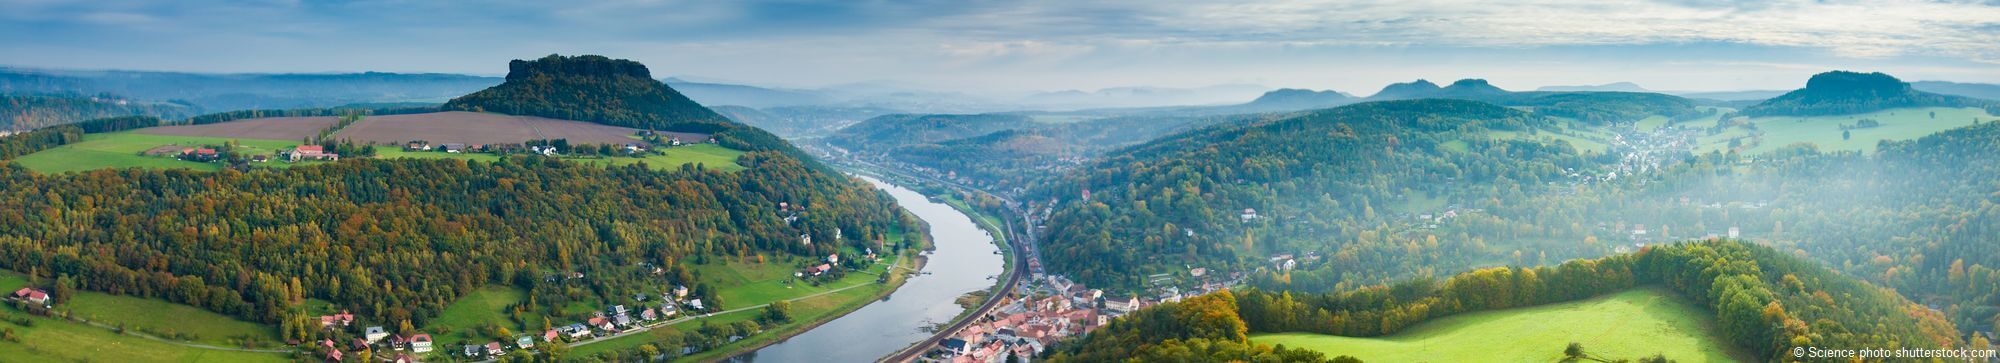 Blick von der Festung Königstein über die Sächsische Schweiz und Elbe